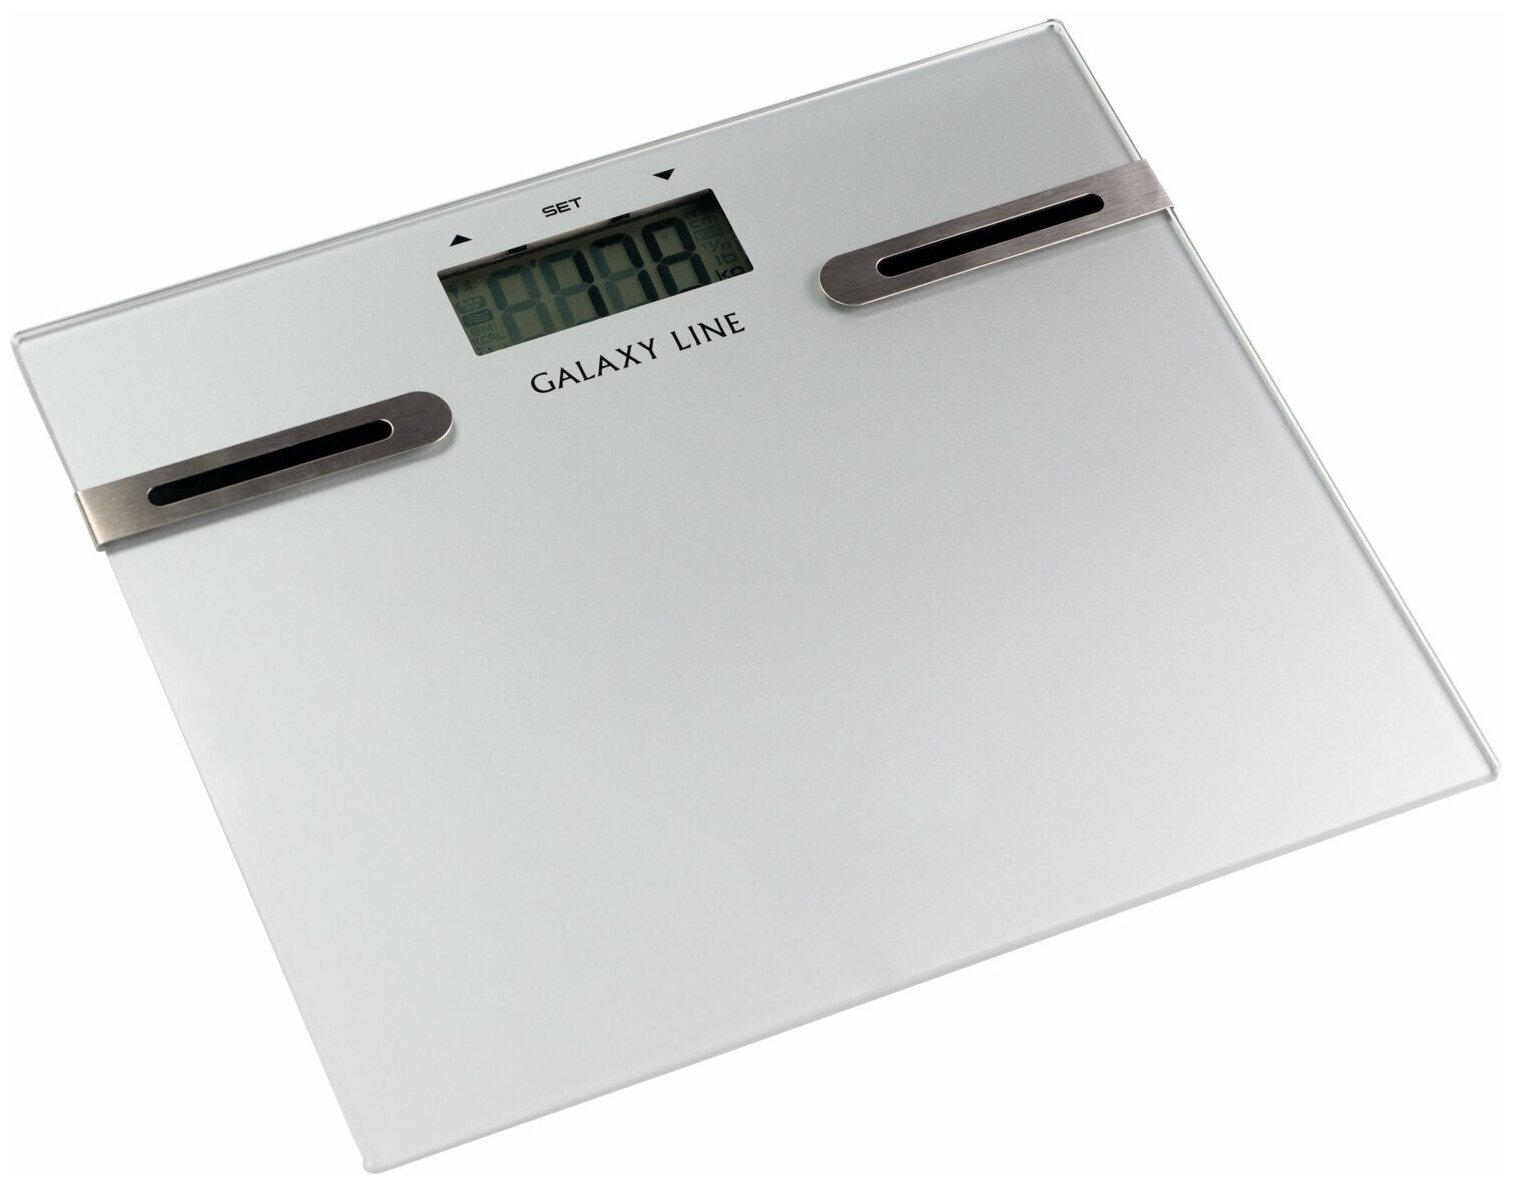 Весы напольные GALAXY line GL 4855